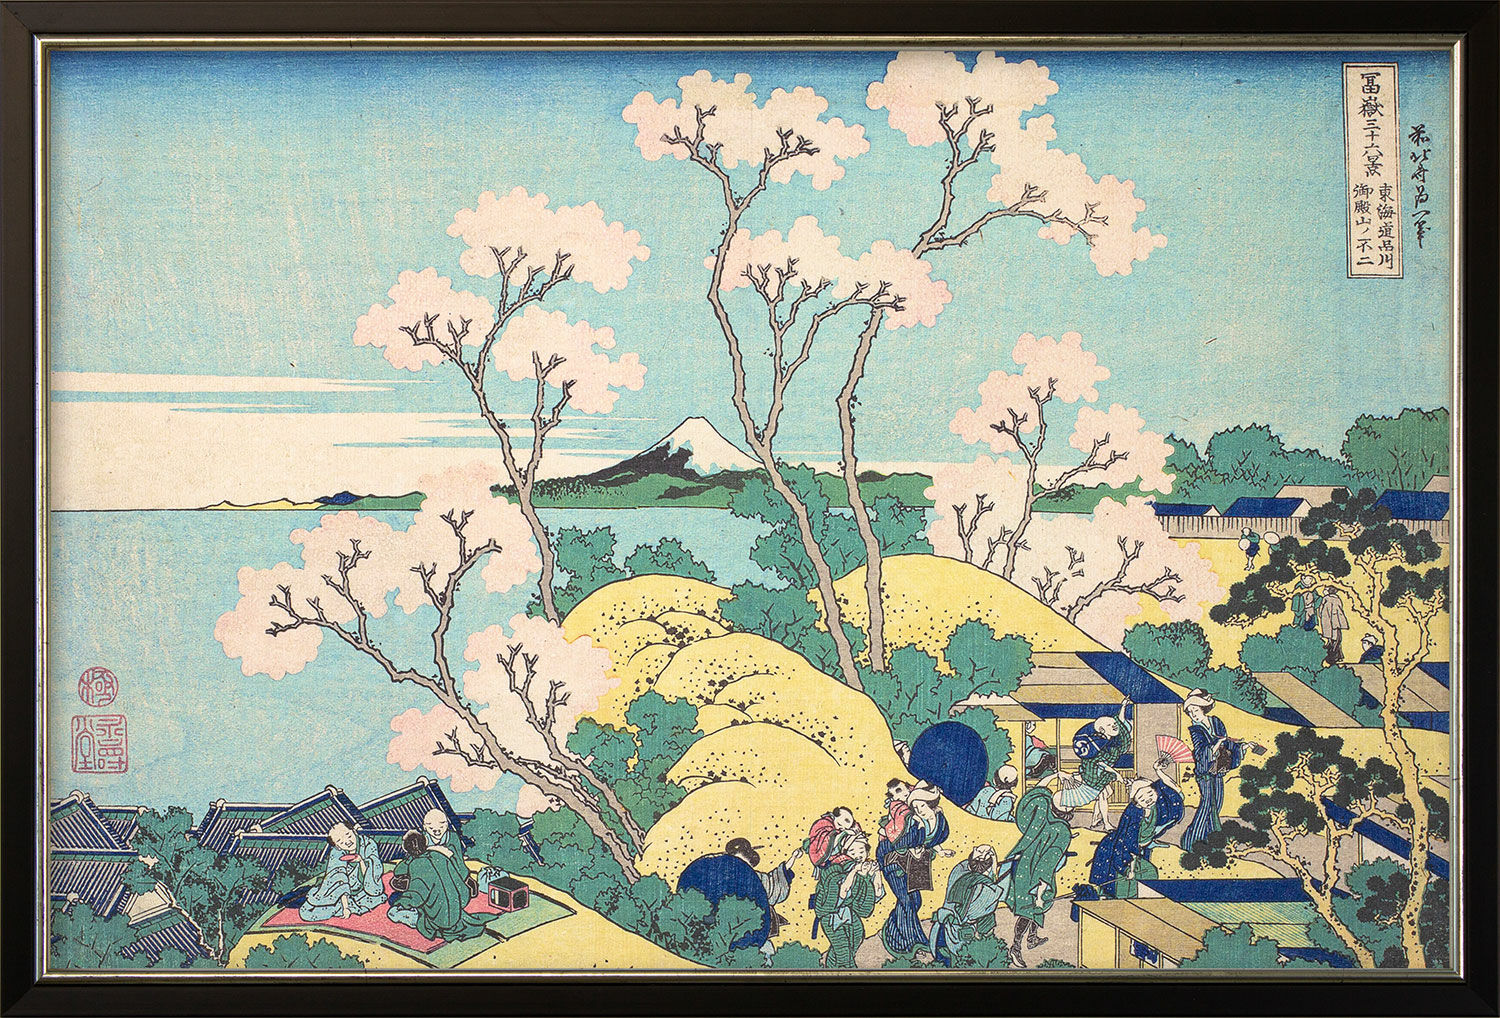 Beeld "Fuji van Gotenyama bij Shinagawa op de Tōkaidō" (ca. 1830-32), ingelijst von Katsushika Hokusai